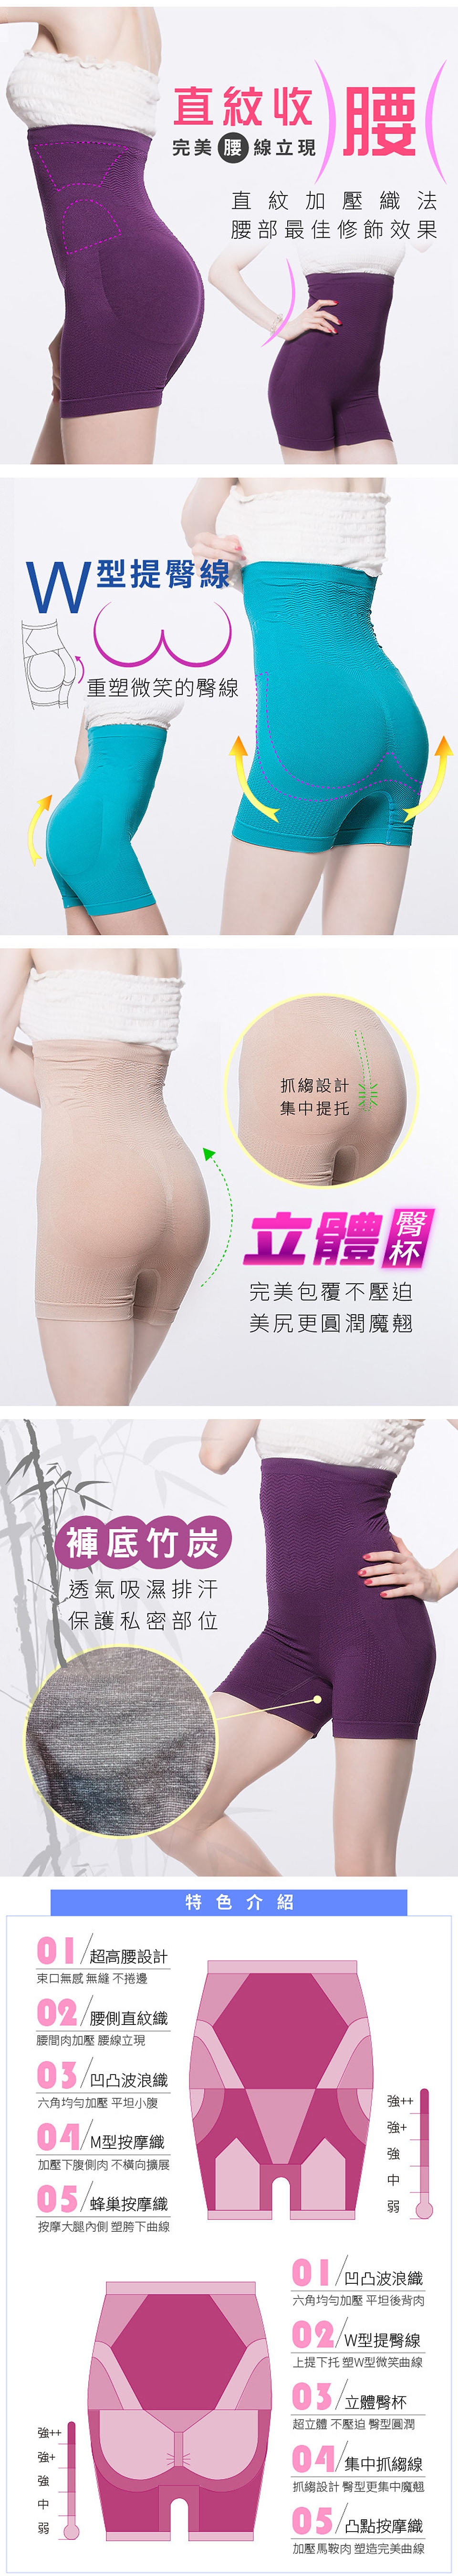 【Yi-sheng】抗溢肉腰夾式美臀平口褲(超值4件組)